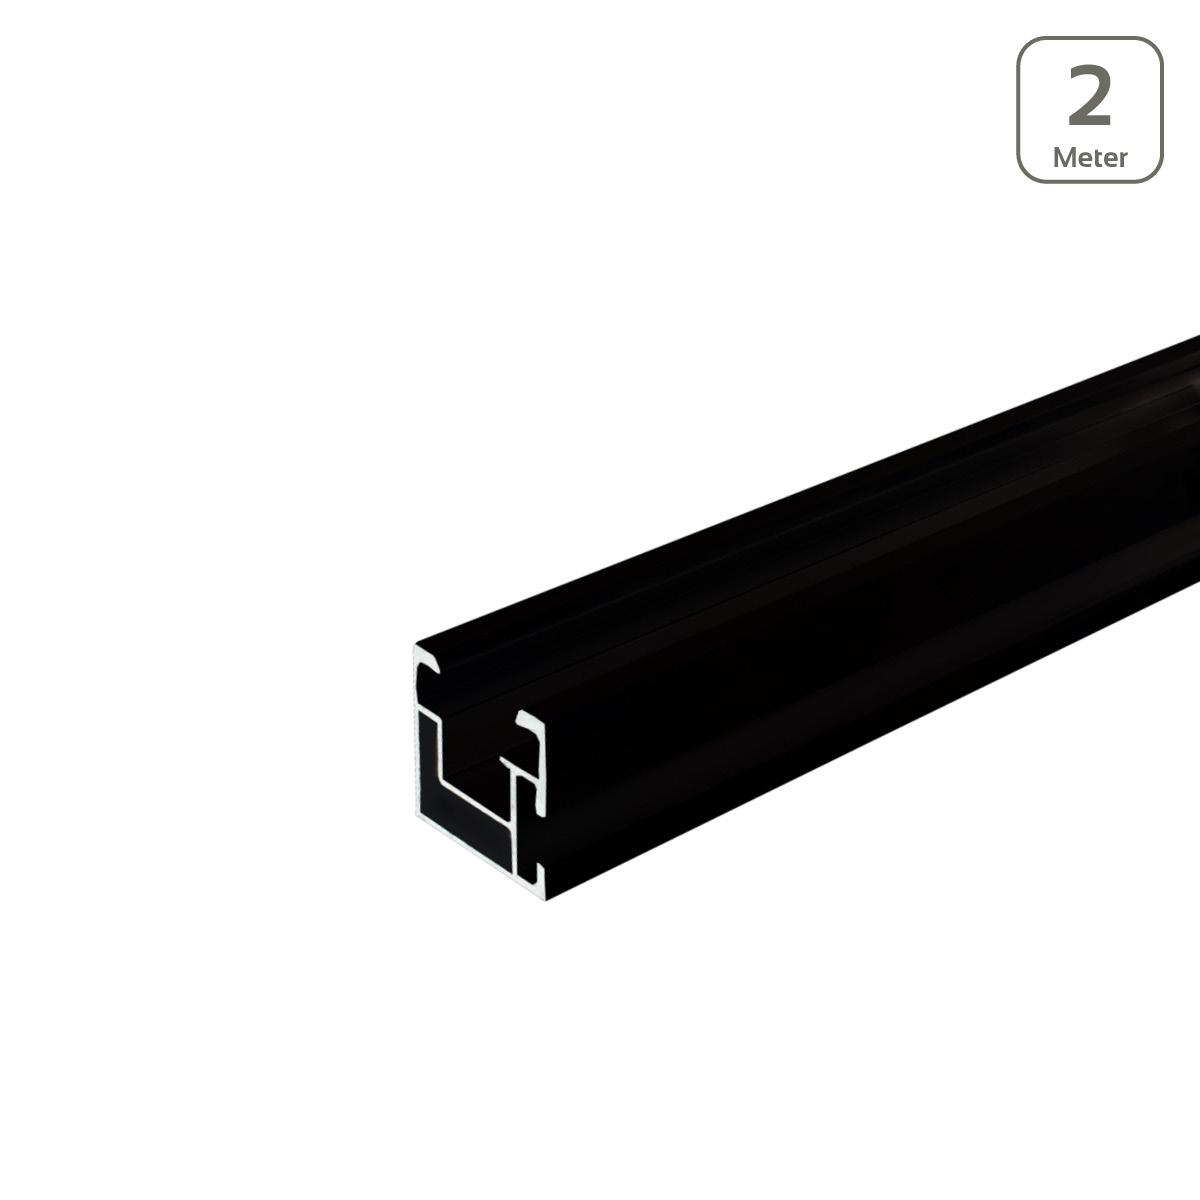 Avanti Profil schwarz eloxiert mit seitlicher Anbindung/Hammerkopfschr. M10 - Länge: 2 Meter - MwSt: 19% für Geschäftskunden